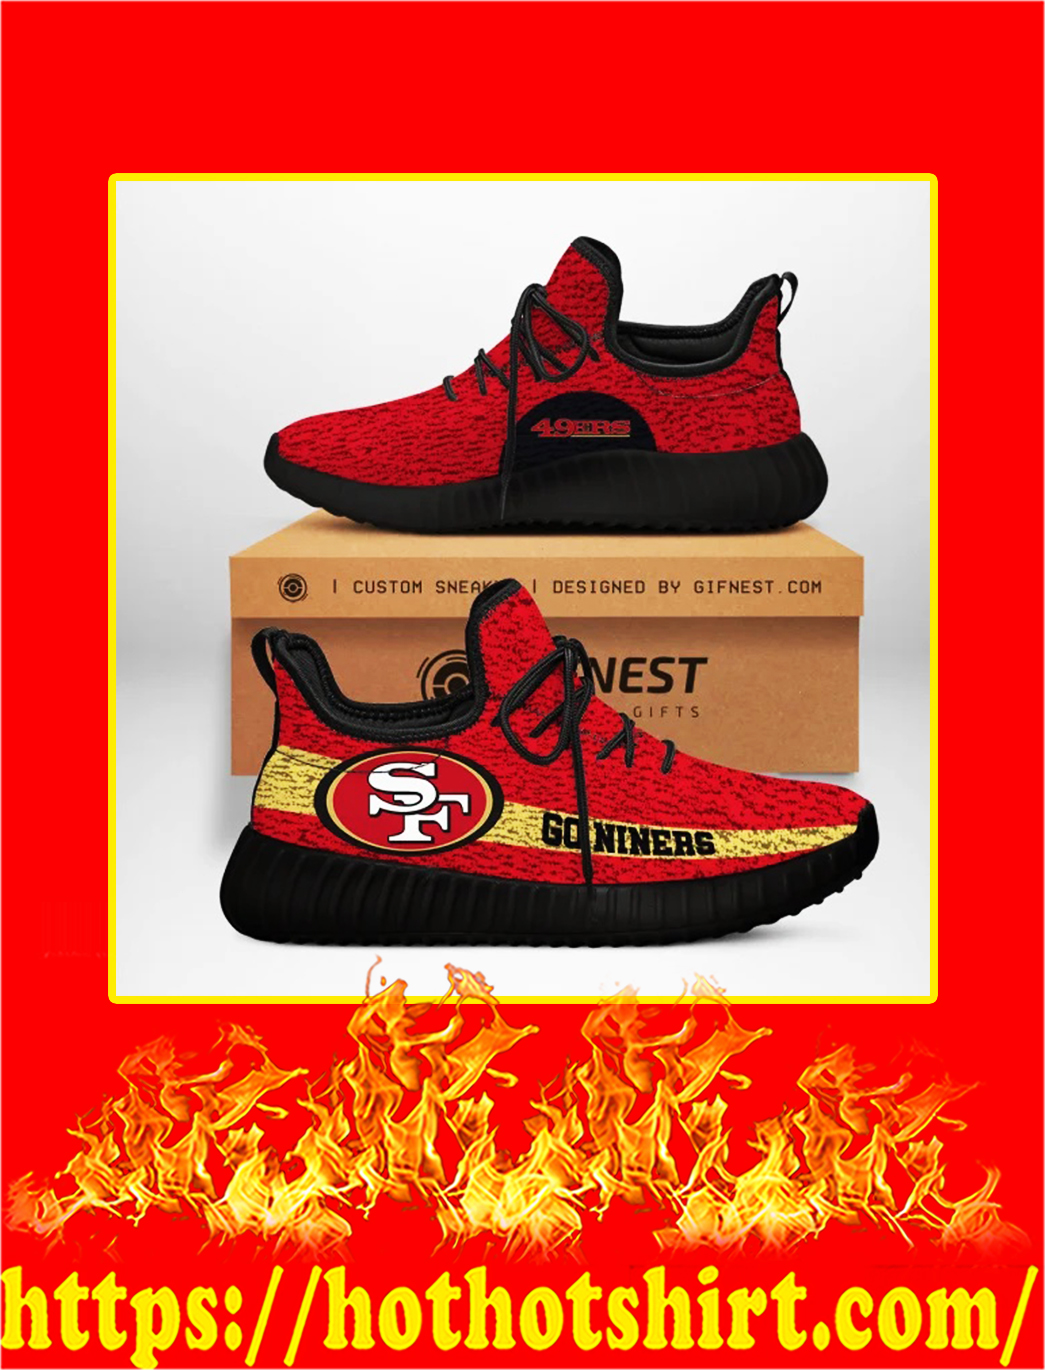 Go Niners San Francisco 49ers NFL Yeezy Sneaker